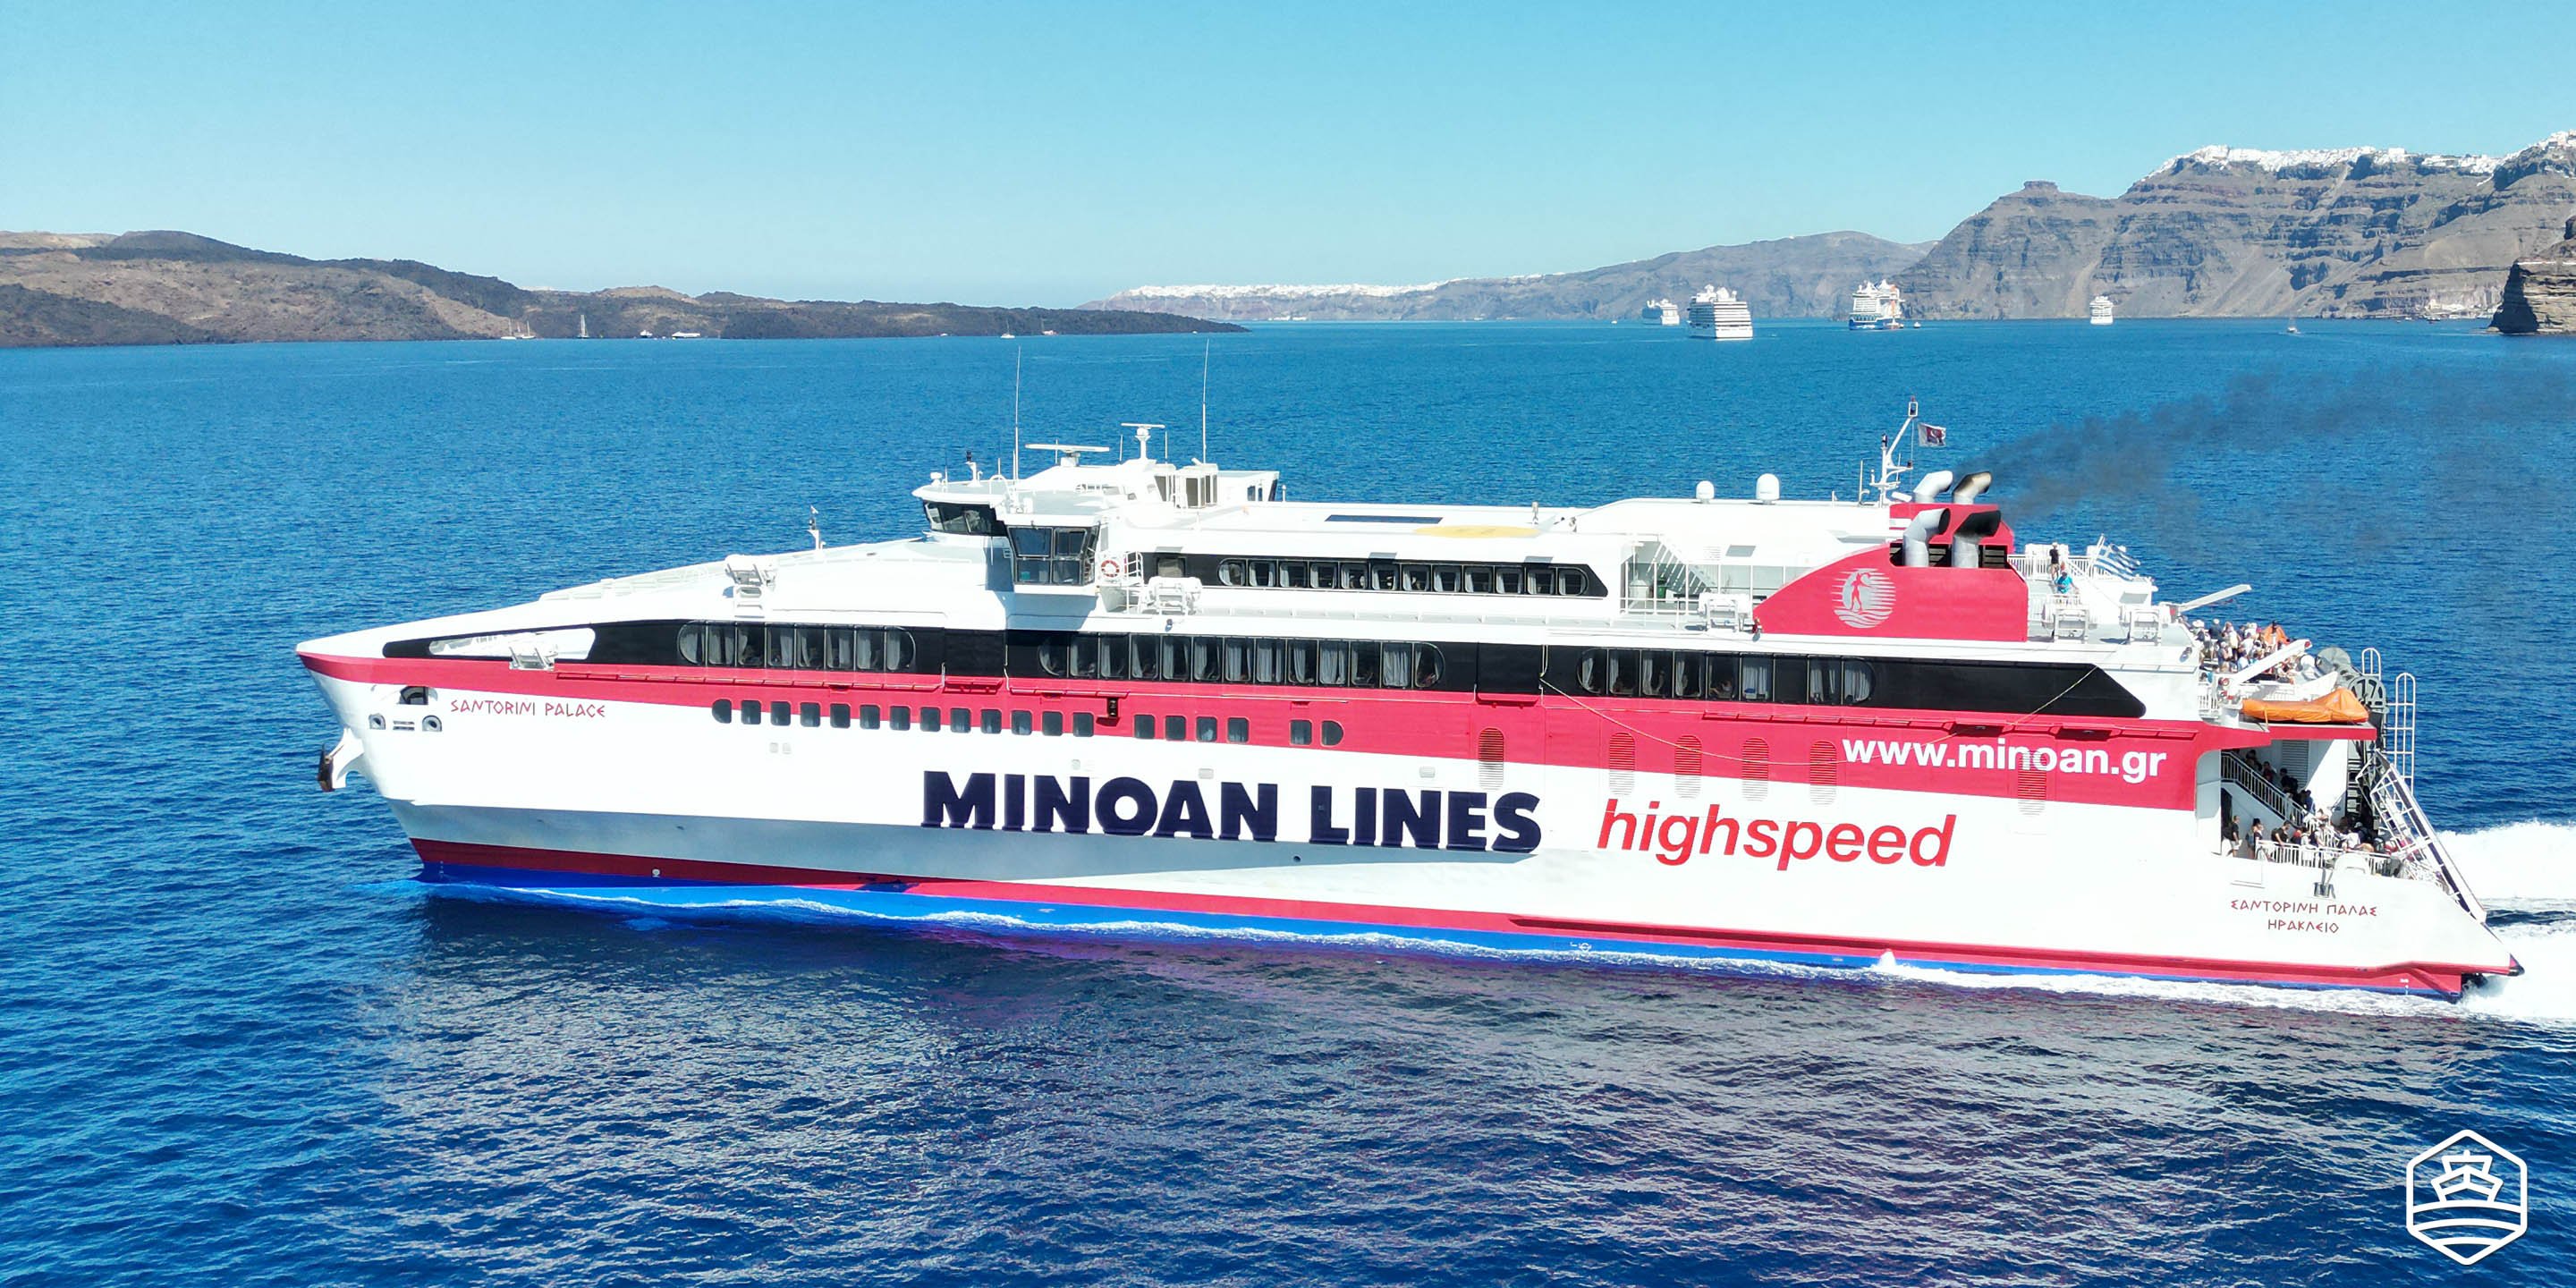 Le ferry à grande vitesse Santorini Palace de Minoan Lines quitte le port d'Athinios à Santorini pour Heraklion en Crète